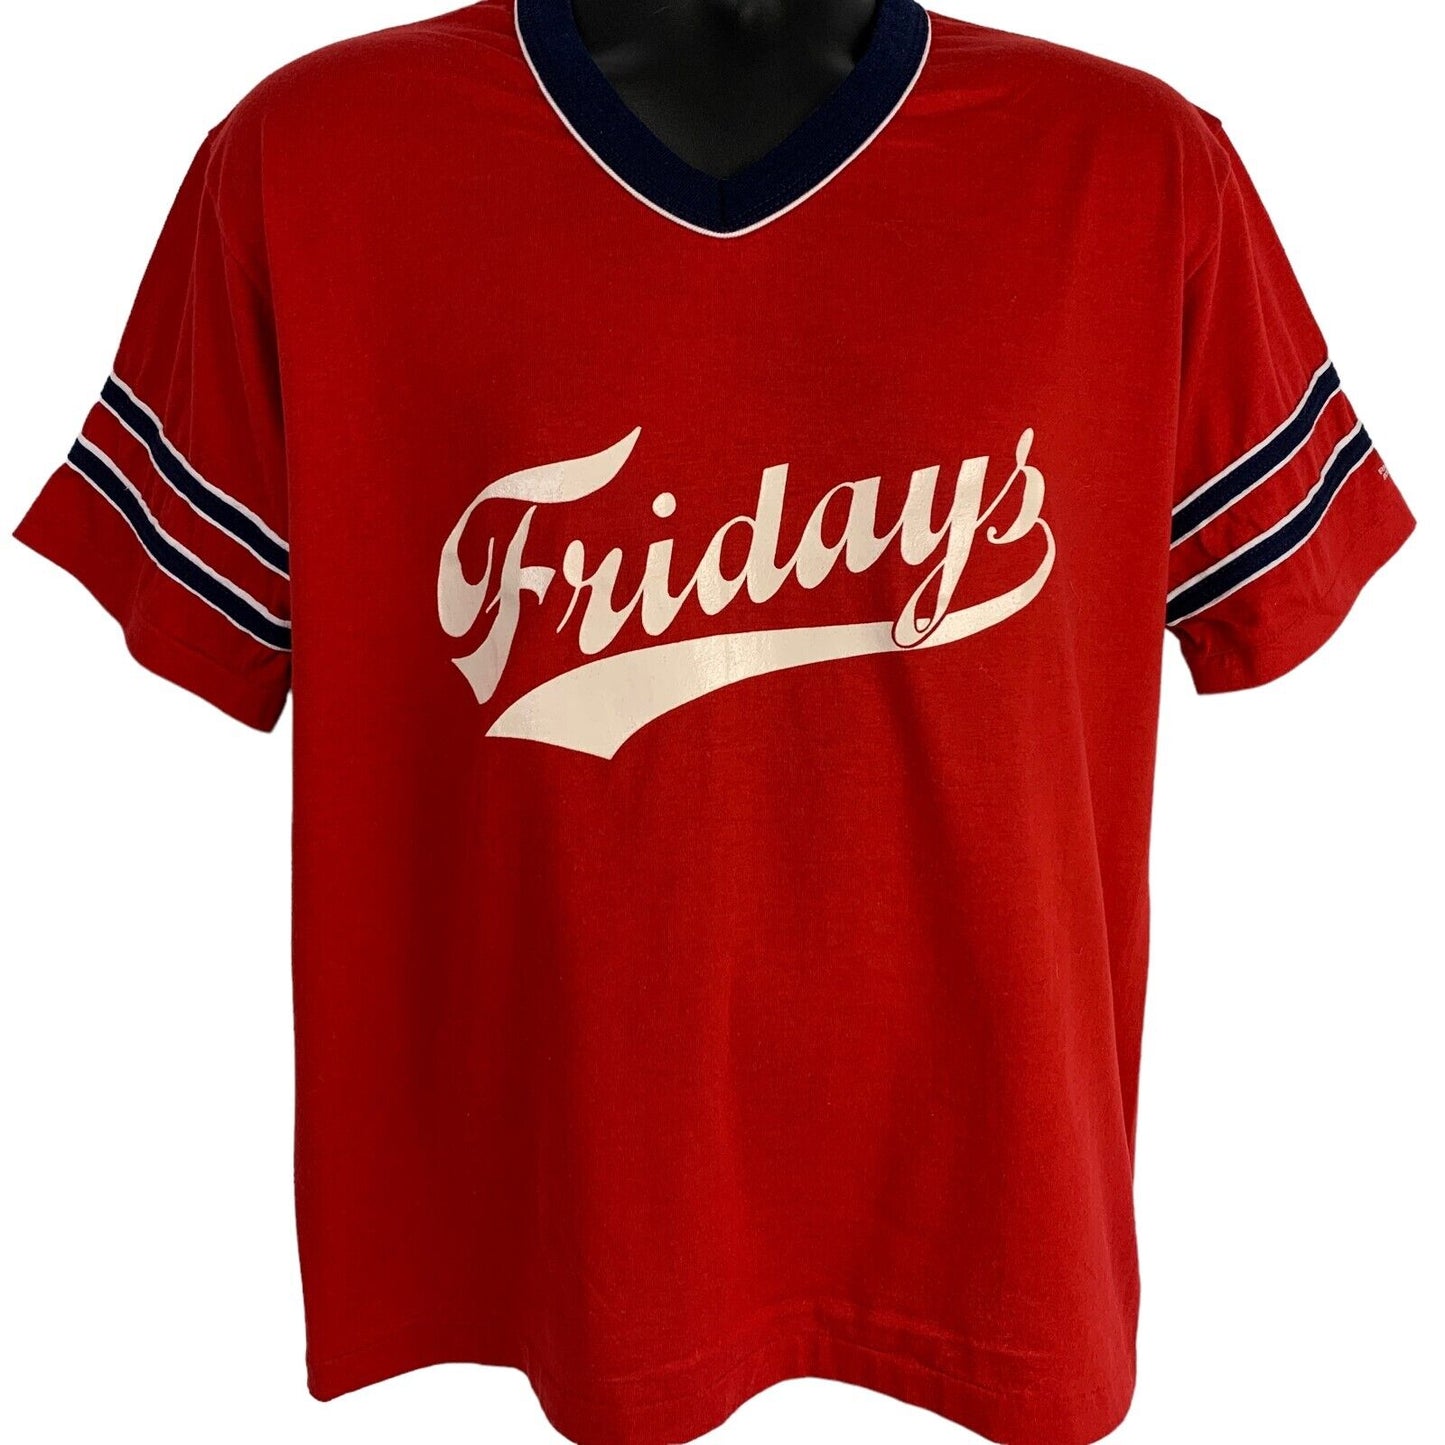 TGI Fridays 23 复古 80 年代林格 T 恤垒球棒球美国制造大号